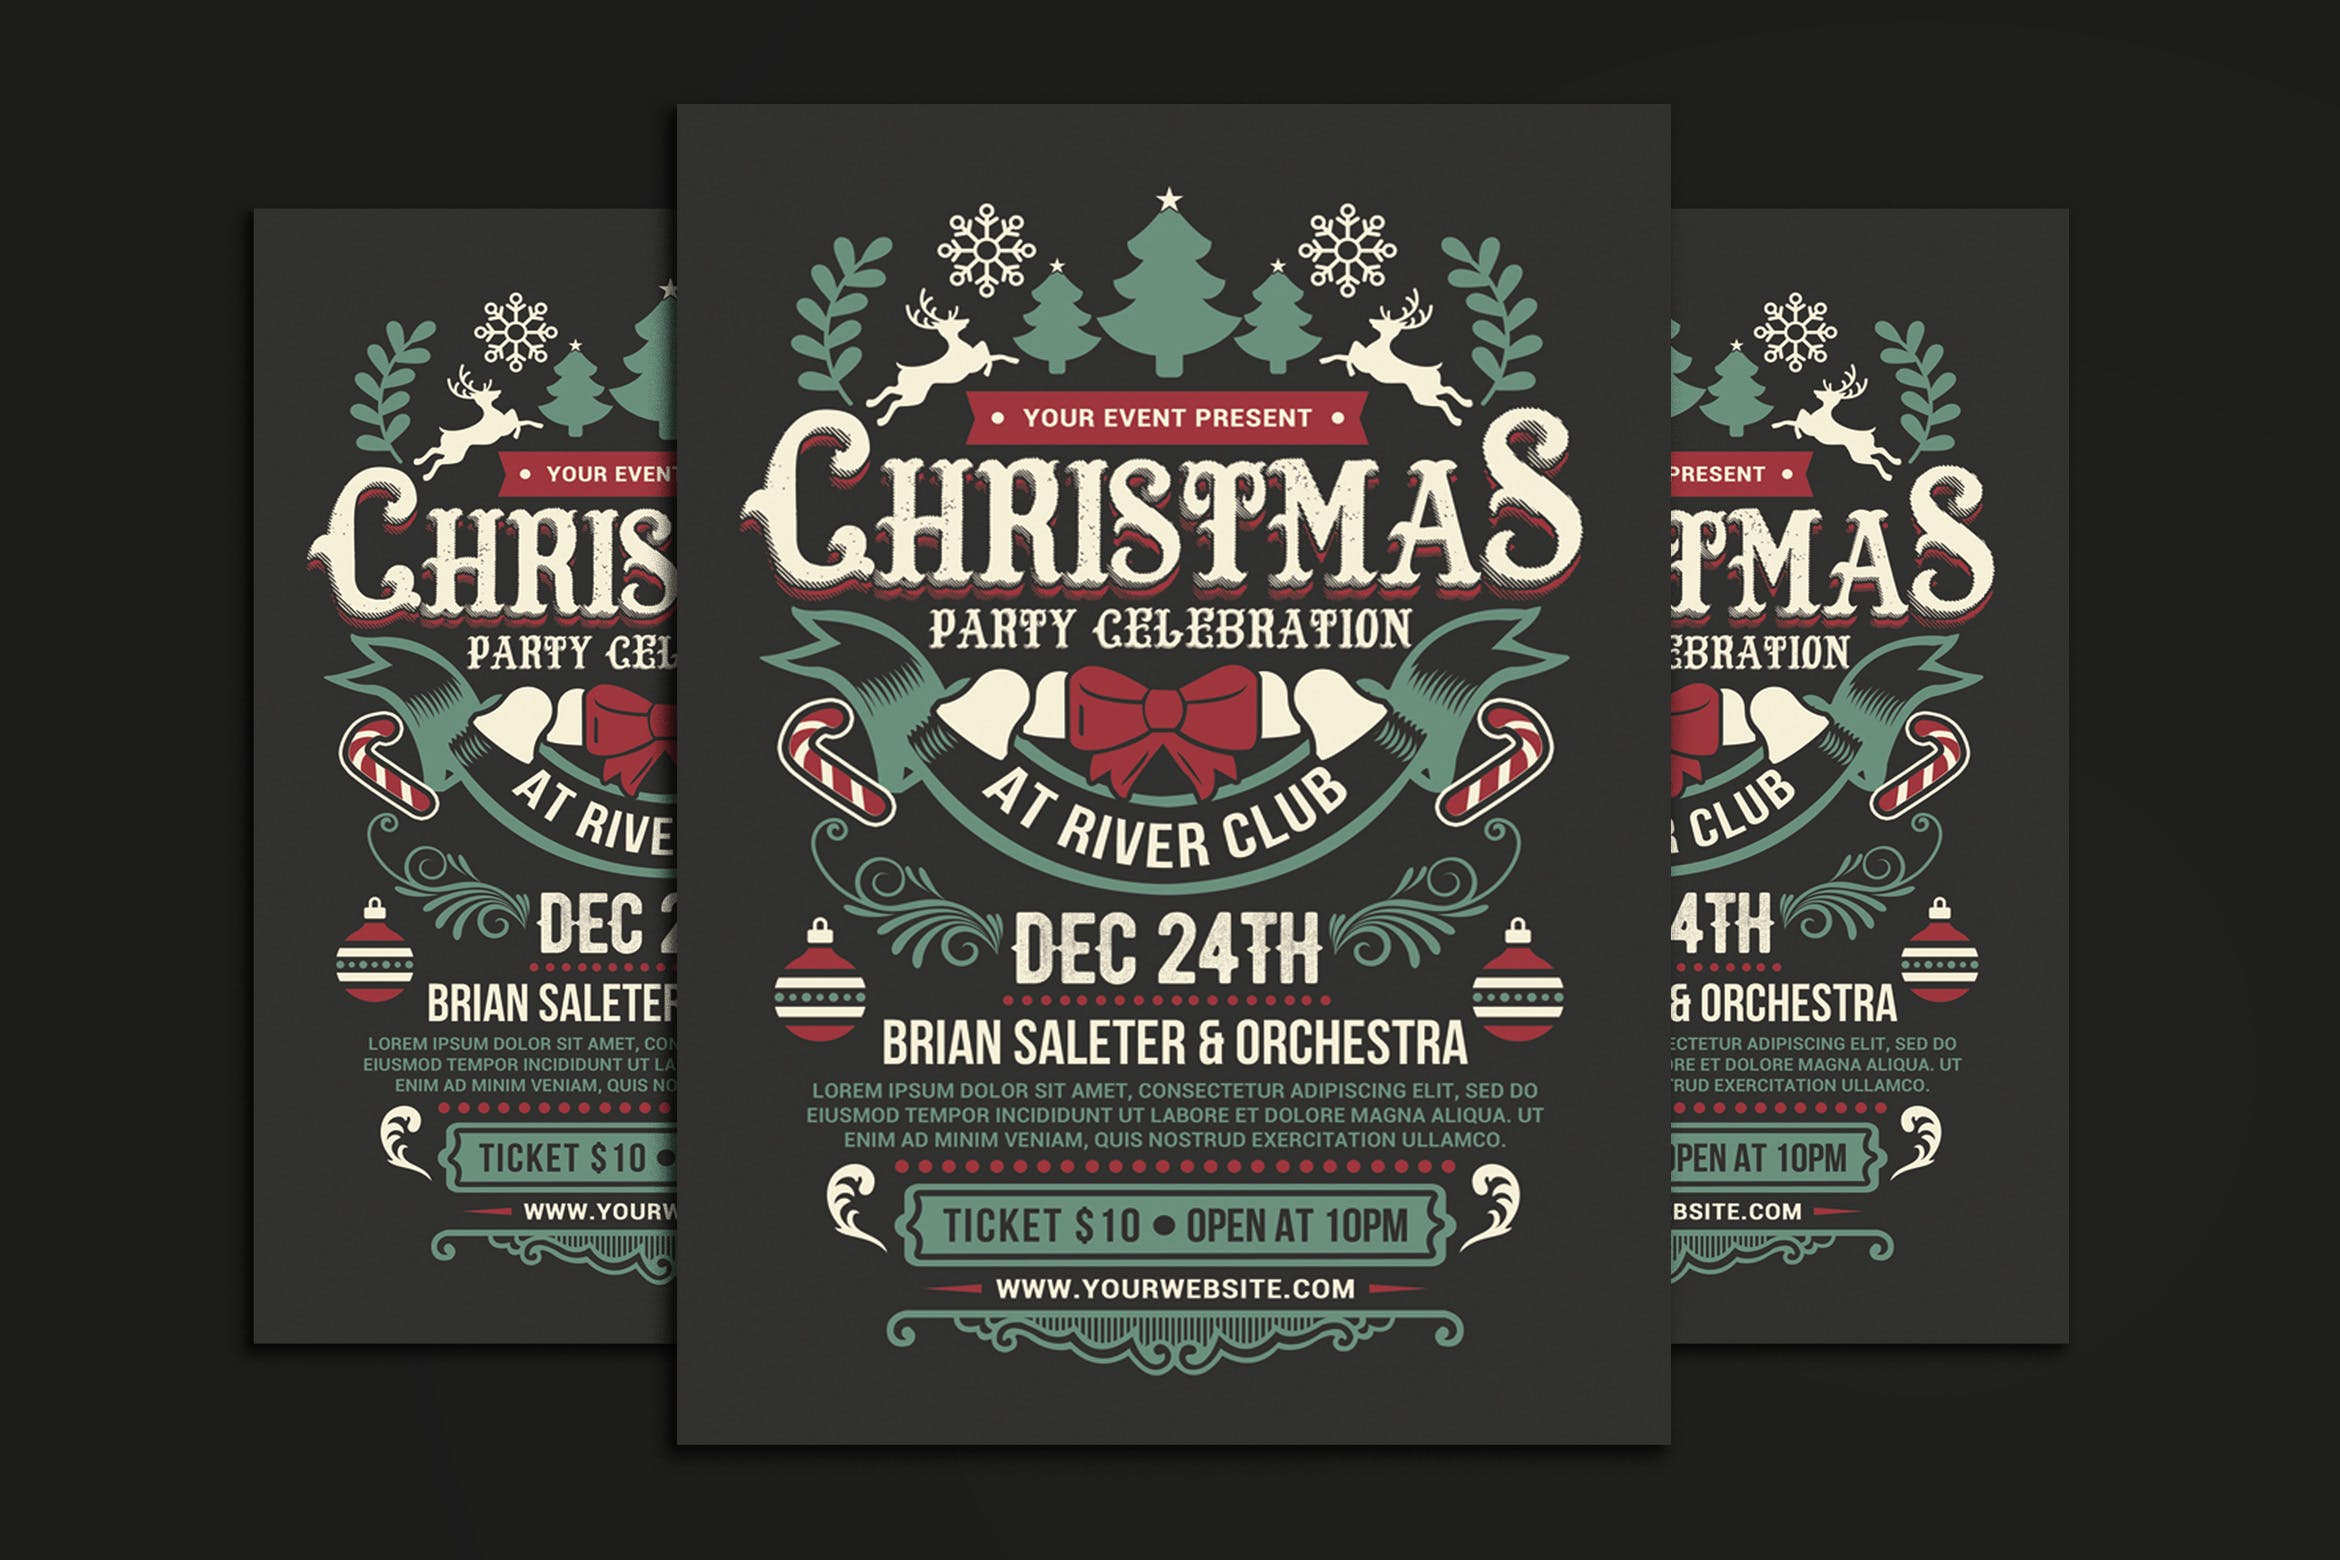 复古设计风格圣诞节派对活动海报传单模板 Christmas Party Celebration插图